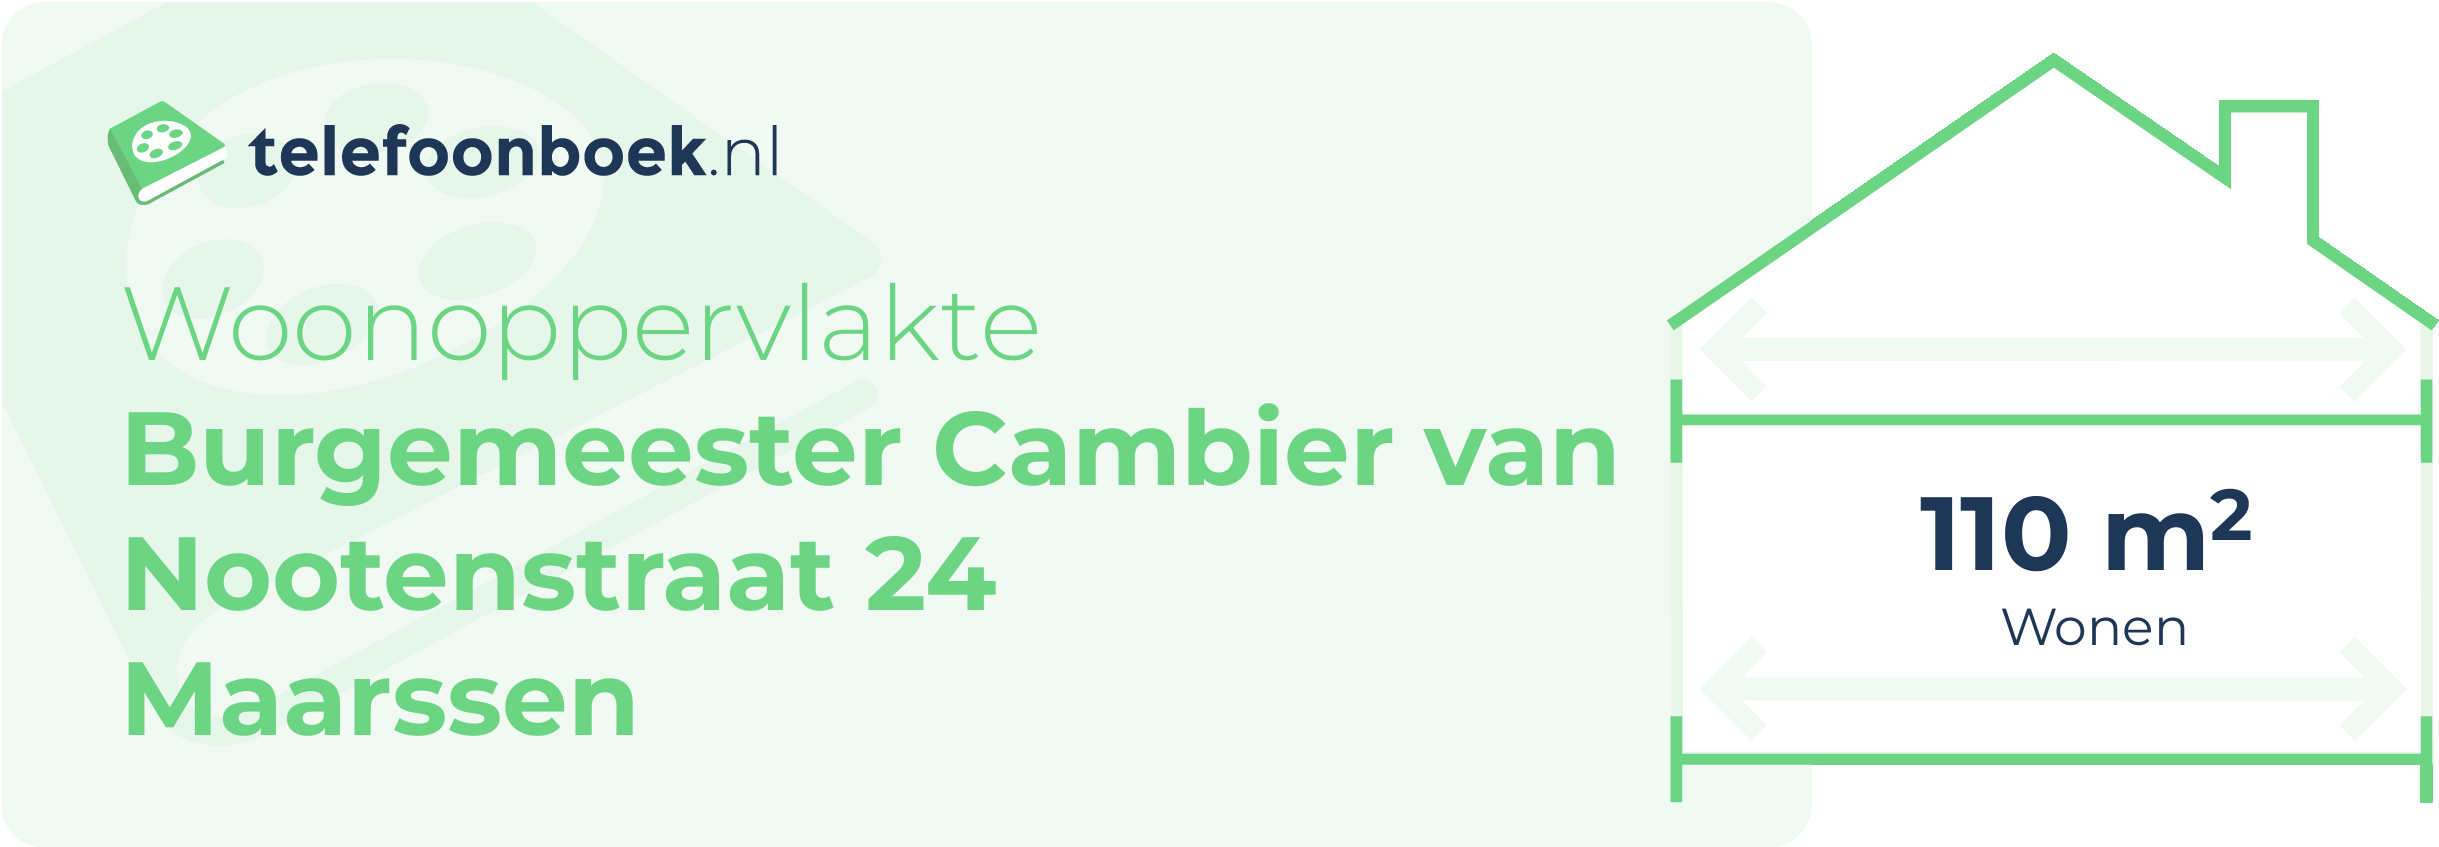 Woonoppervlakte Burgemeester Cambier Van Nootenstraat 24 Maarssen